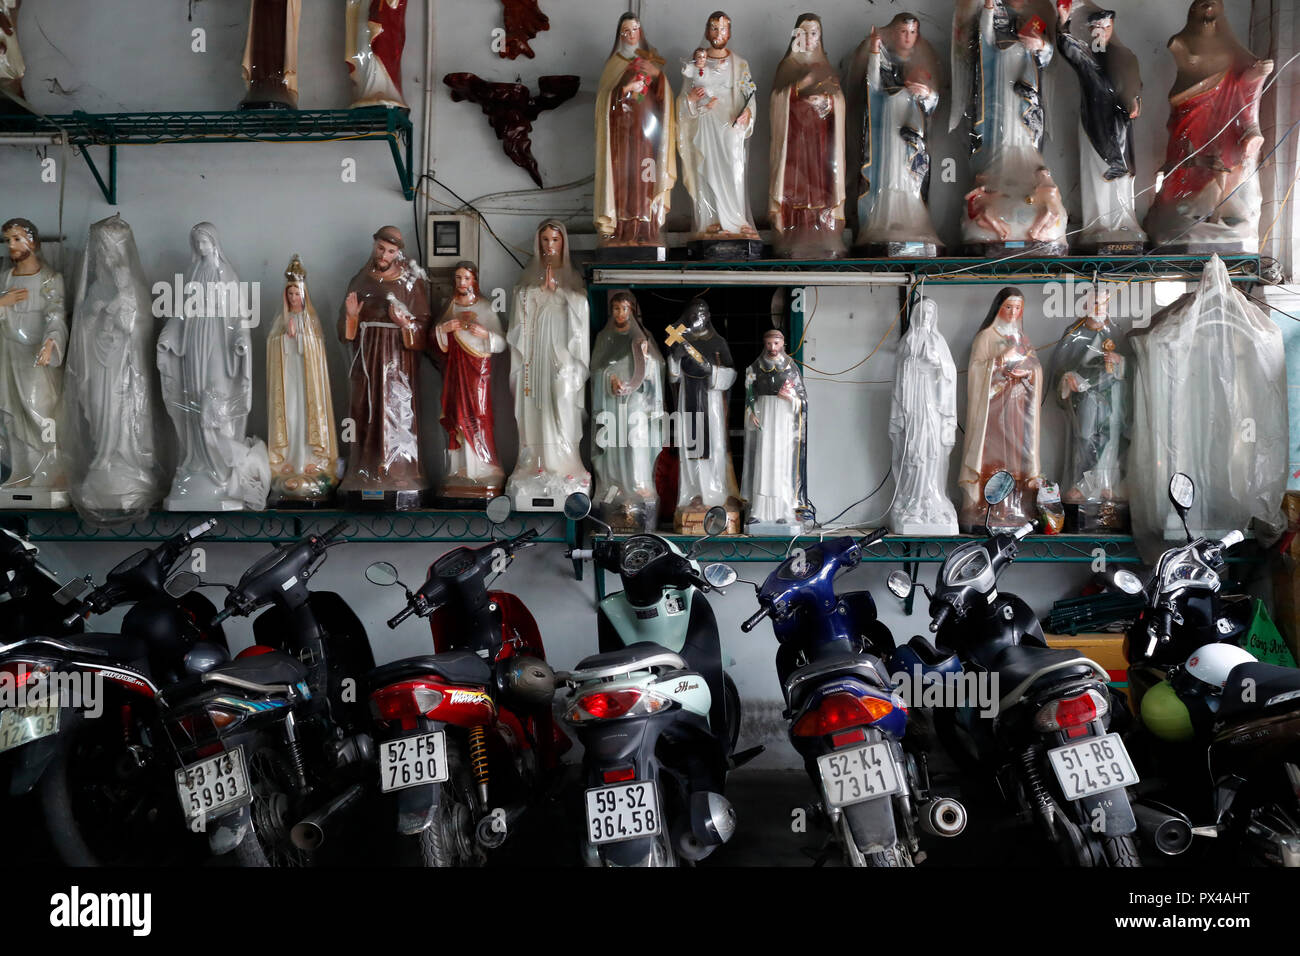 Magasin de vente d'articles religieux chrétiens. Jésus Sainte Vierge statues parmi les motos. Ho Chi Minh Ville. Le Vietnam. Banque D'Images